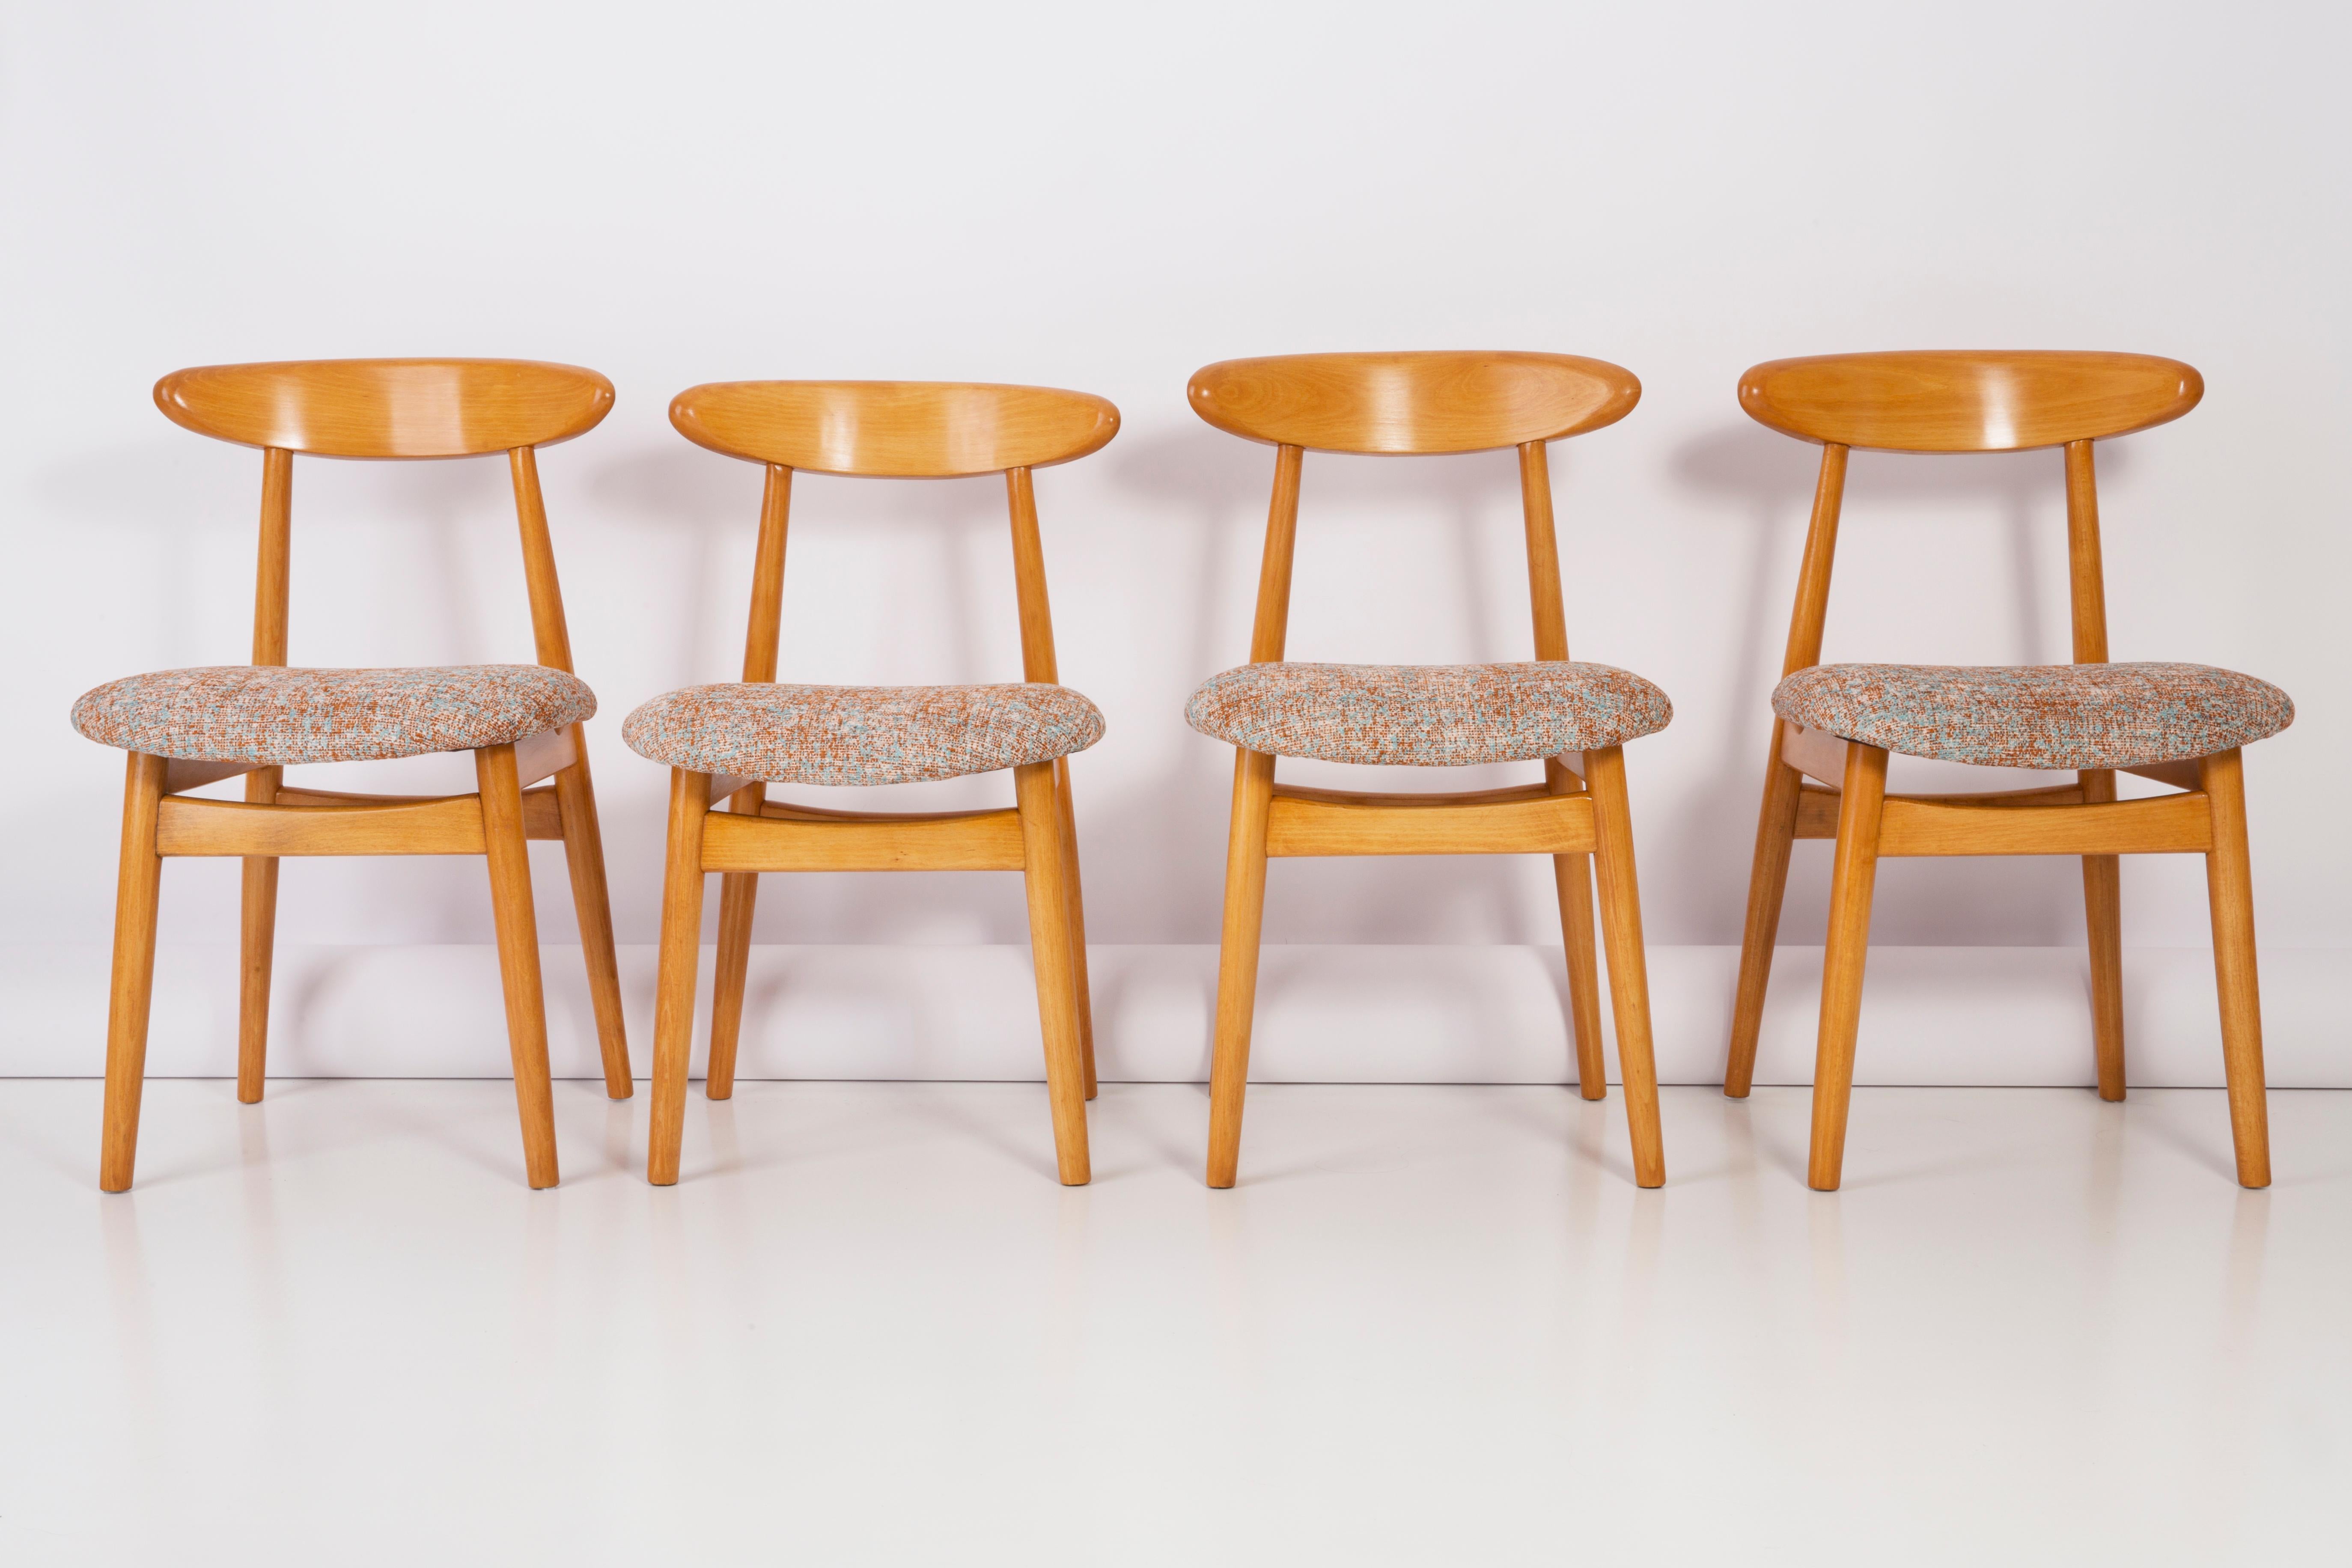 Die Stühle des Typs 5908, die in den 1960er Jahren von Rajmund Teofil Halas entworfen wurden, sind eines der bekanntesten Projekte des polnischen Designs.

Die Stühle haben eine einfache, modernistische Silhouette. Sie zeichnen sich durch